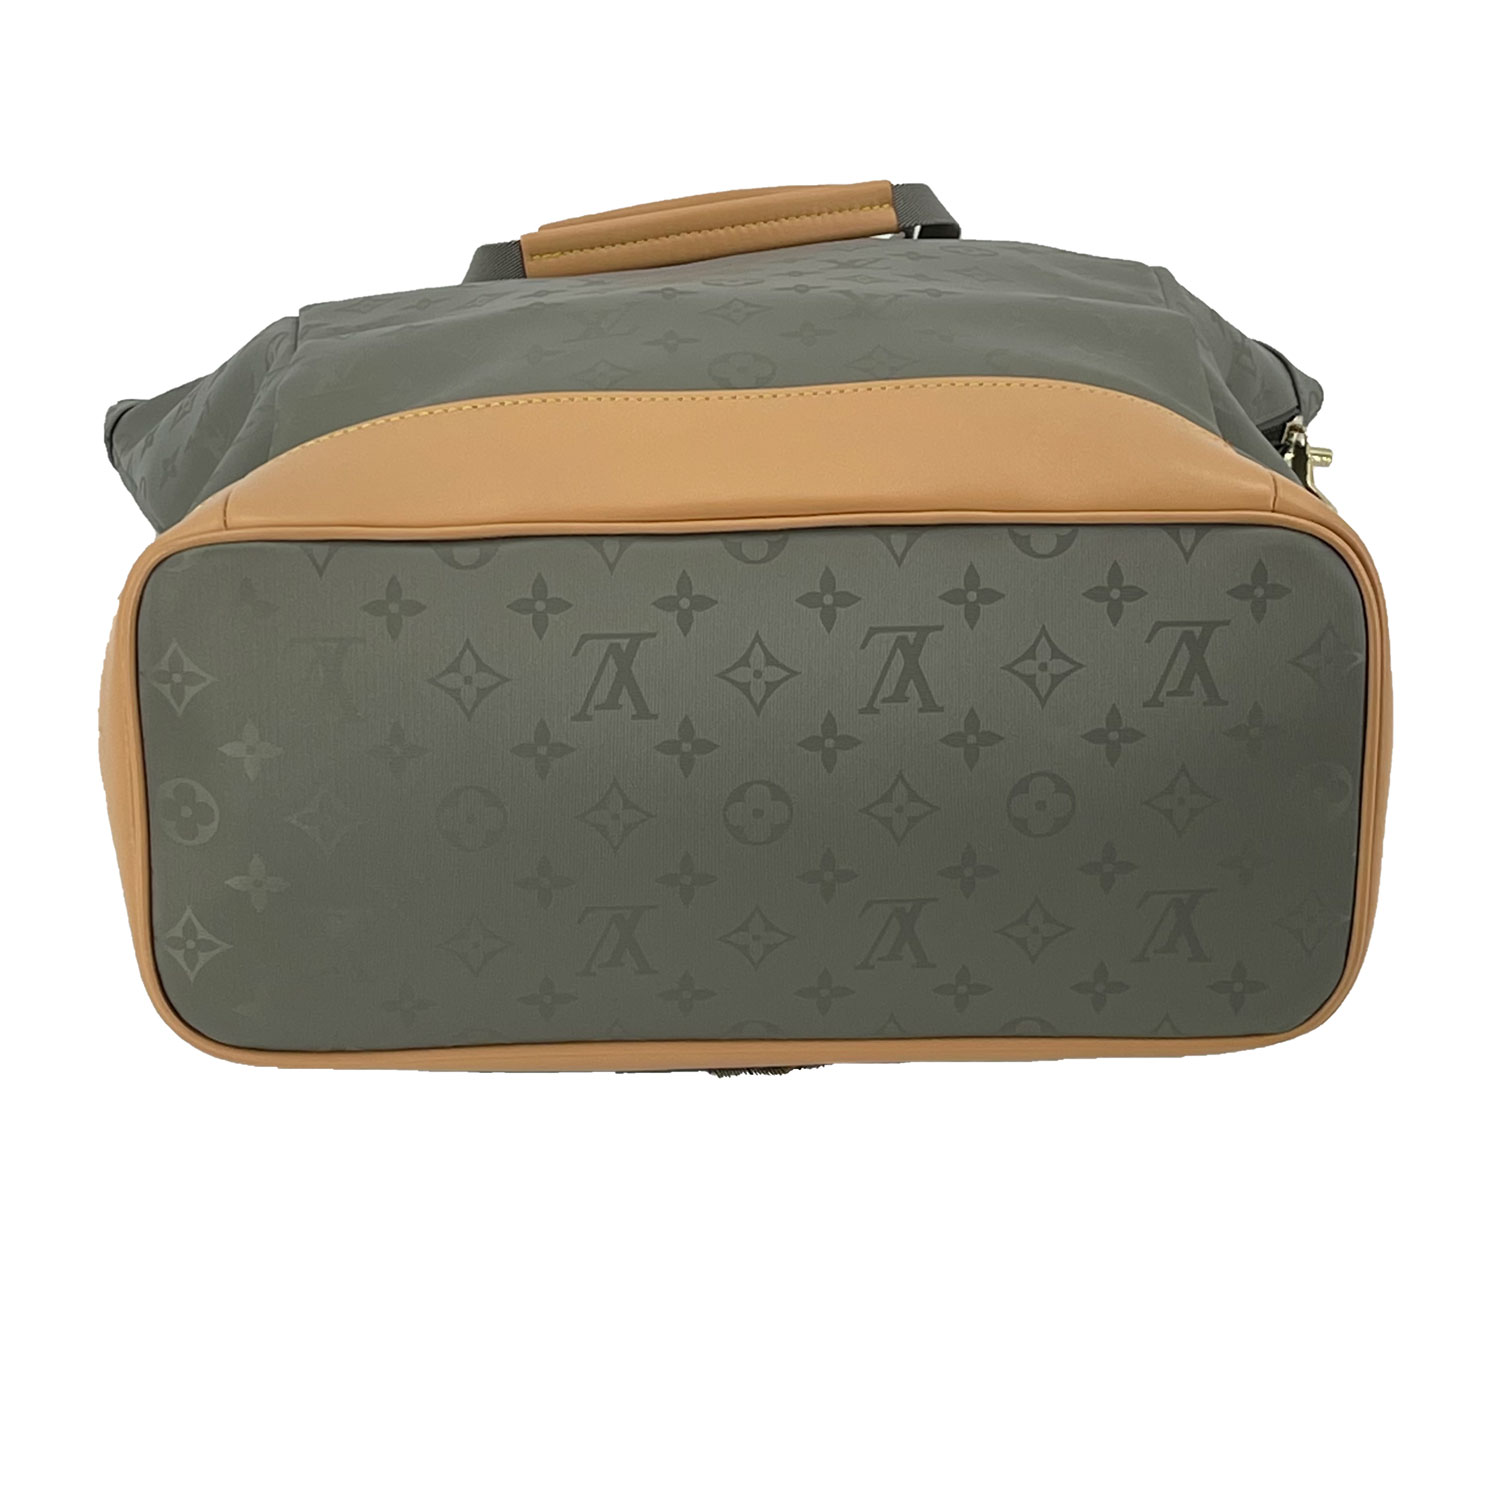 Louis Vuitton Titanium Tote Backpack - DesignerSupplier